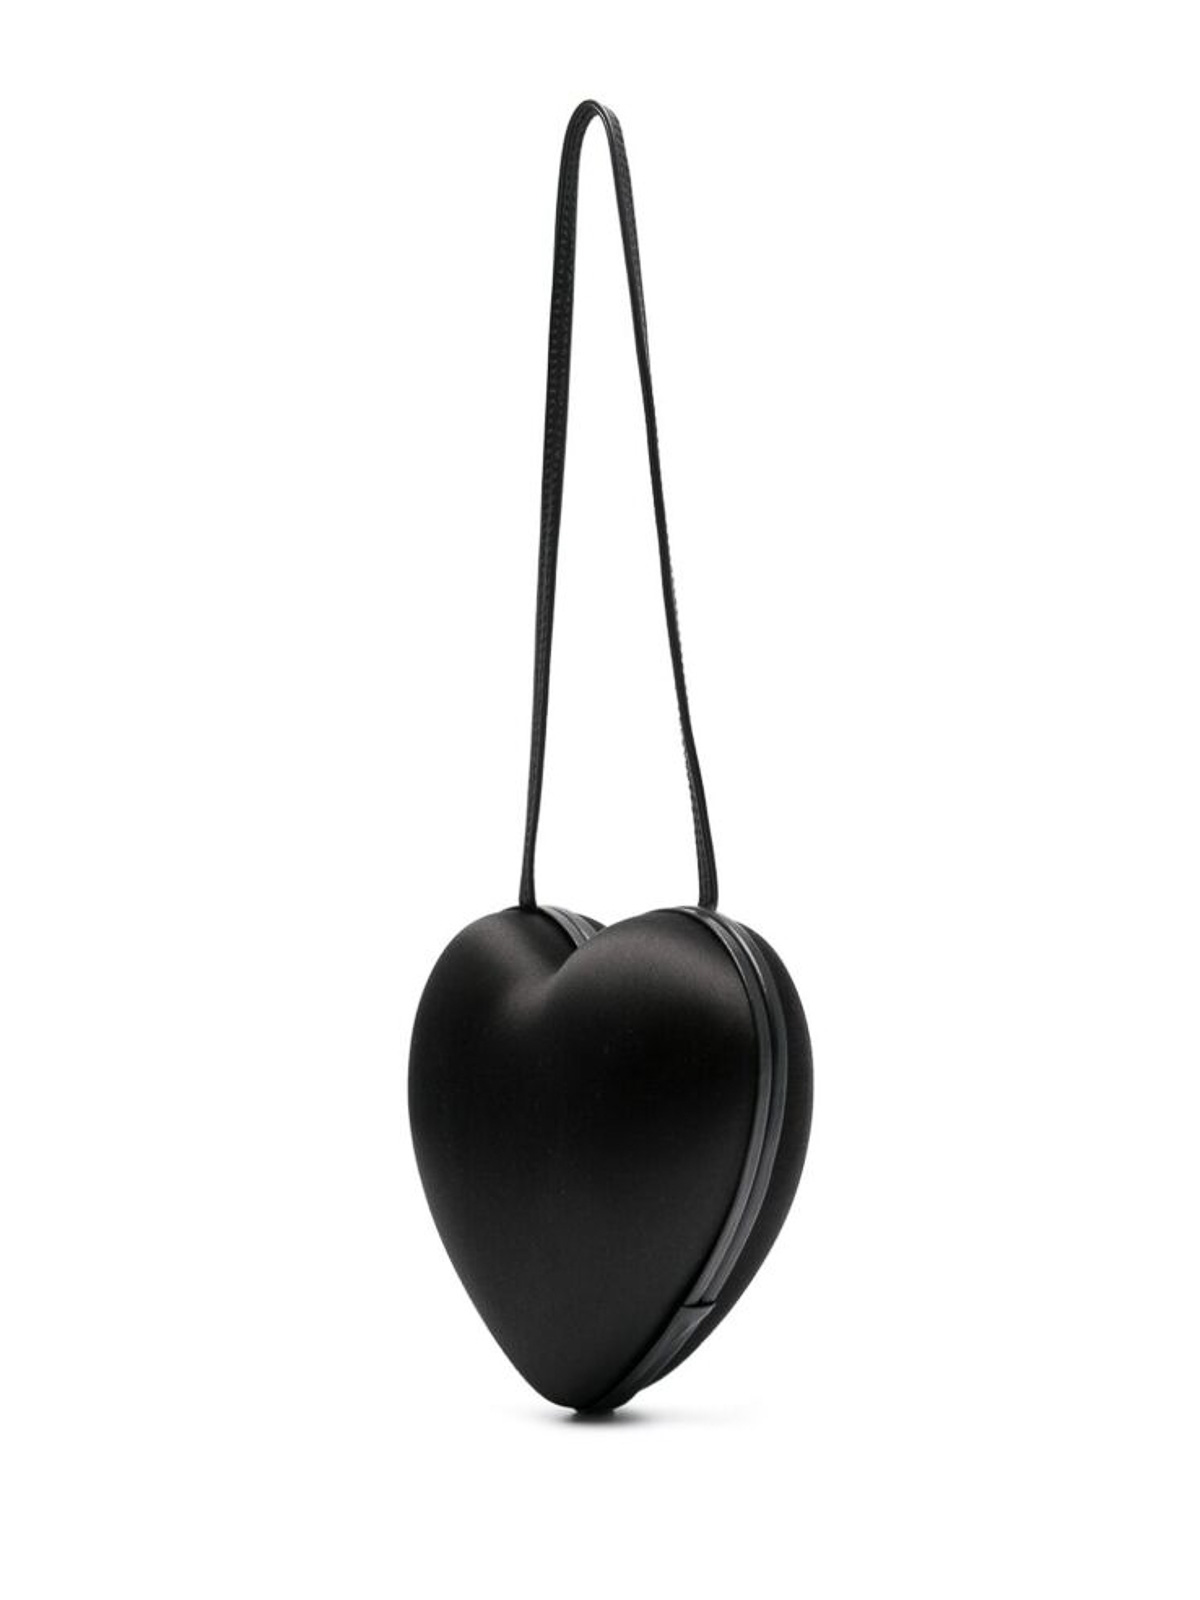 Shop Moschino Black Heart Cut Shoulder Bag